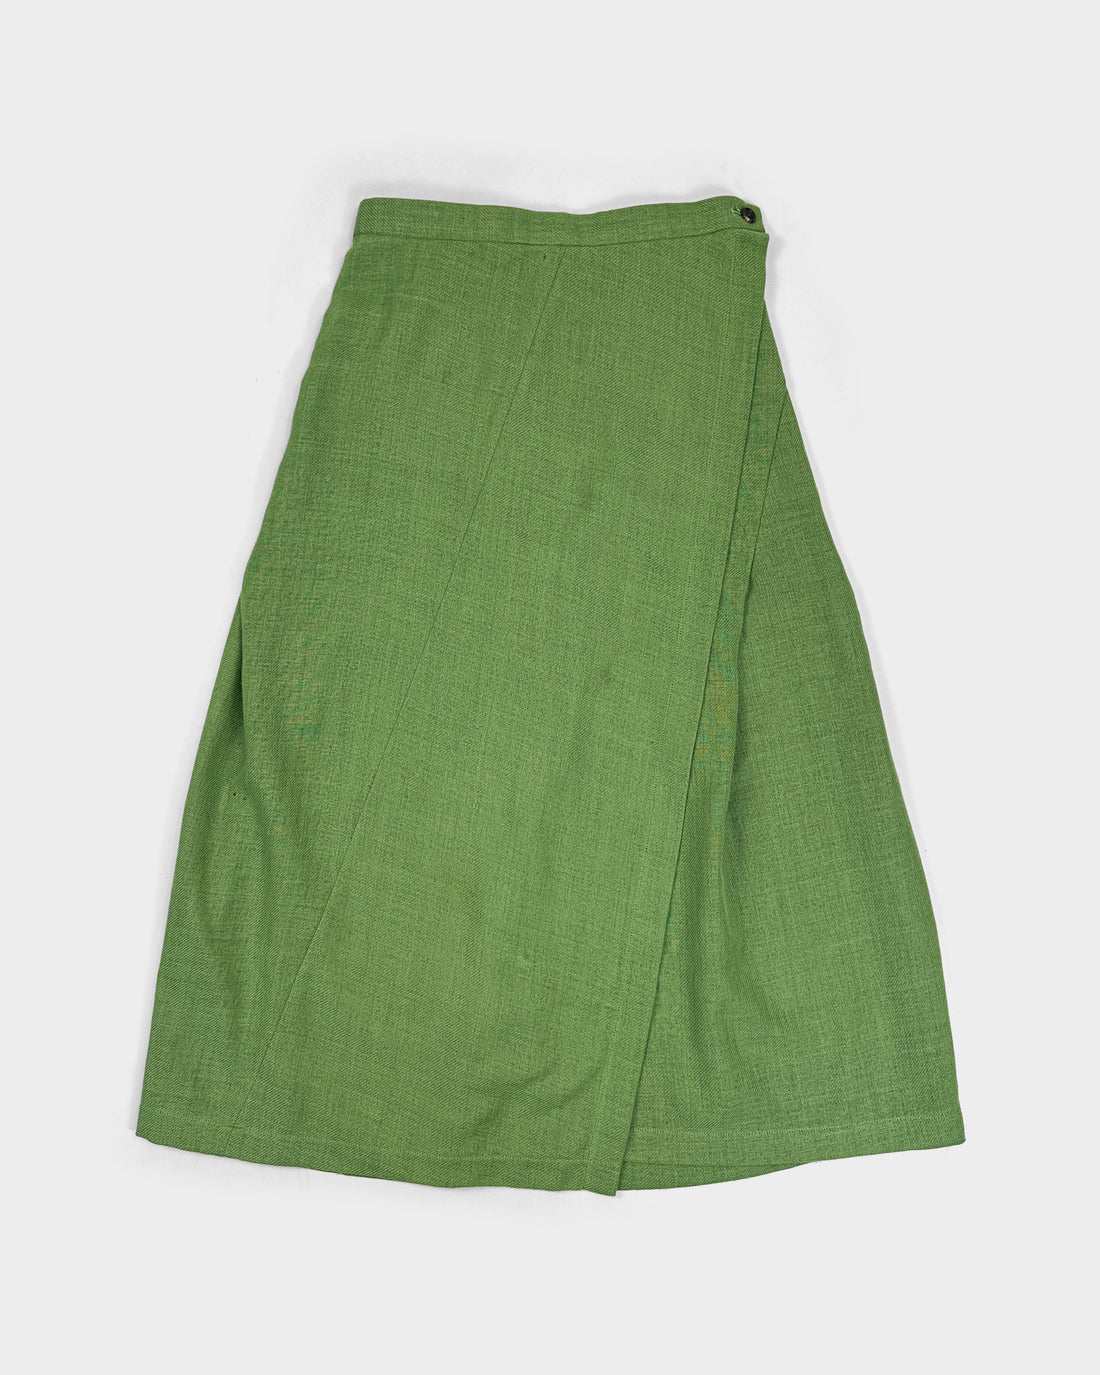 Comme des Garçons Tricot Green 1 Piece Maxi Skirt 1994